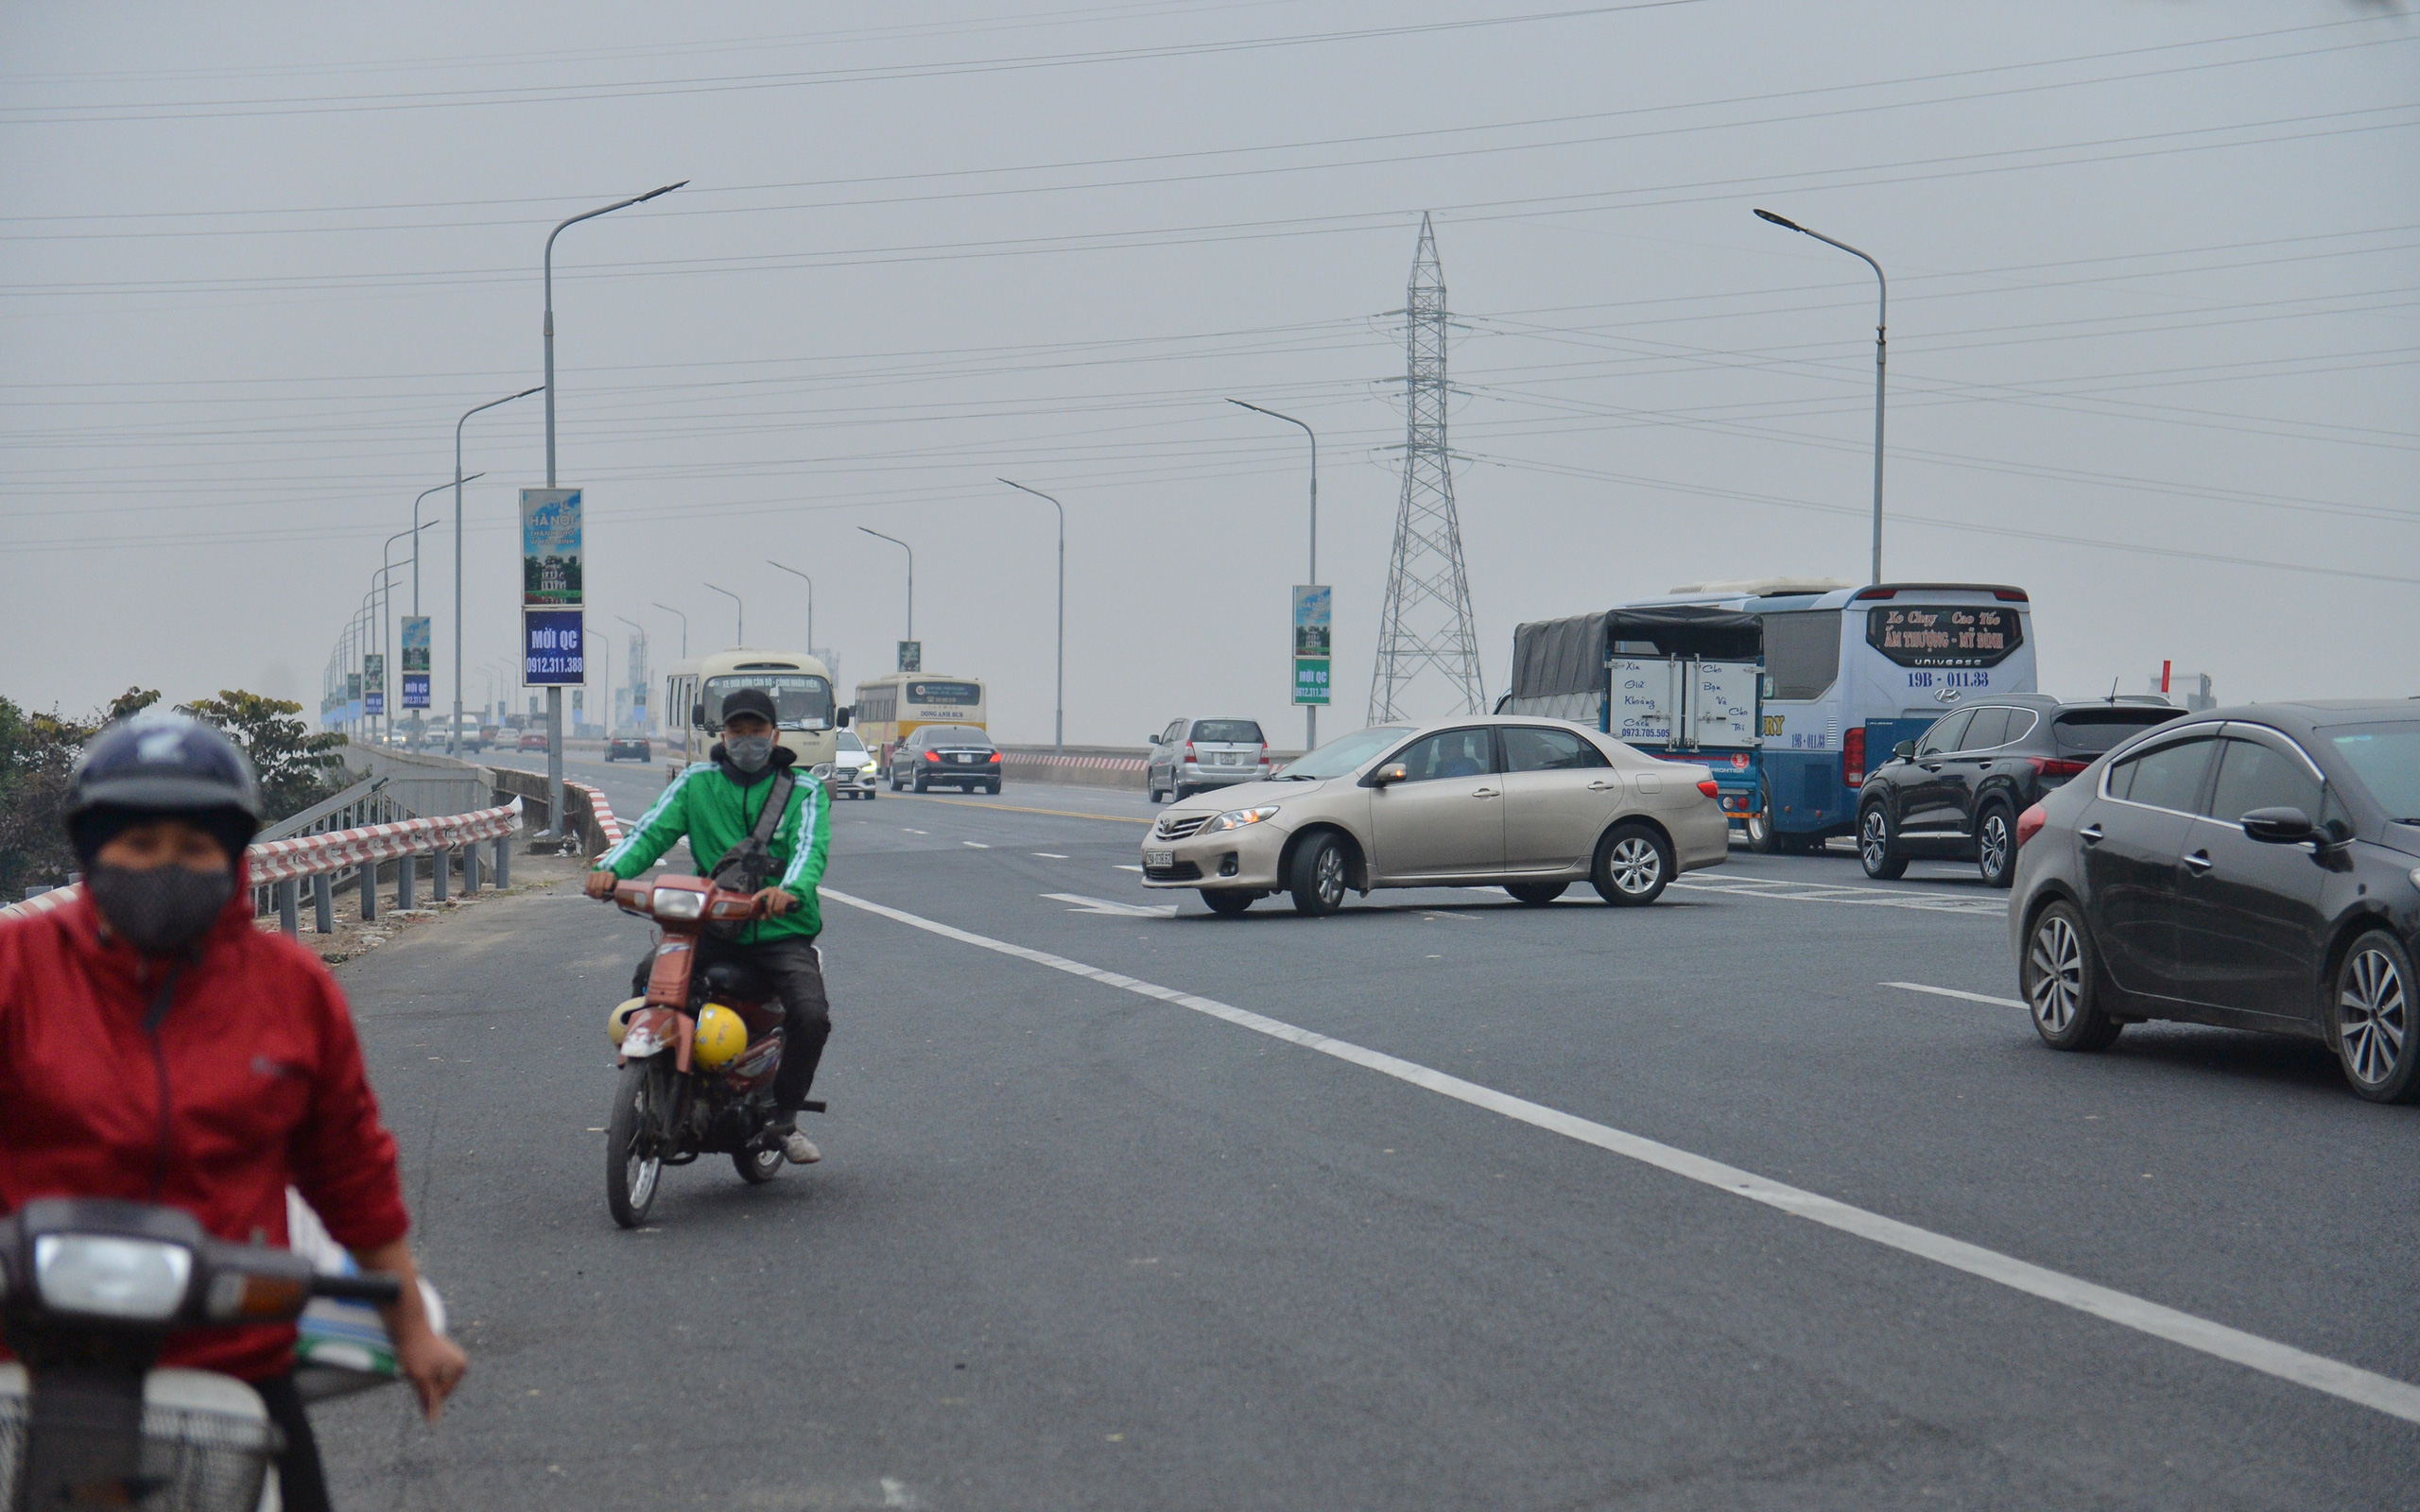 Hàng loạt ô tô bất chấp nguy hiểm, biển cấm, ngang nhiên quay đầu trên tuyến đường cao tốc đẹp nhất Hà Nội